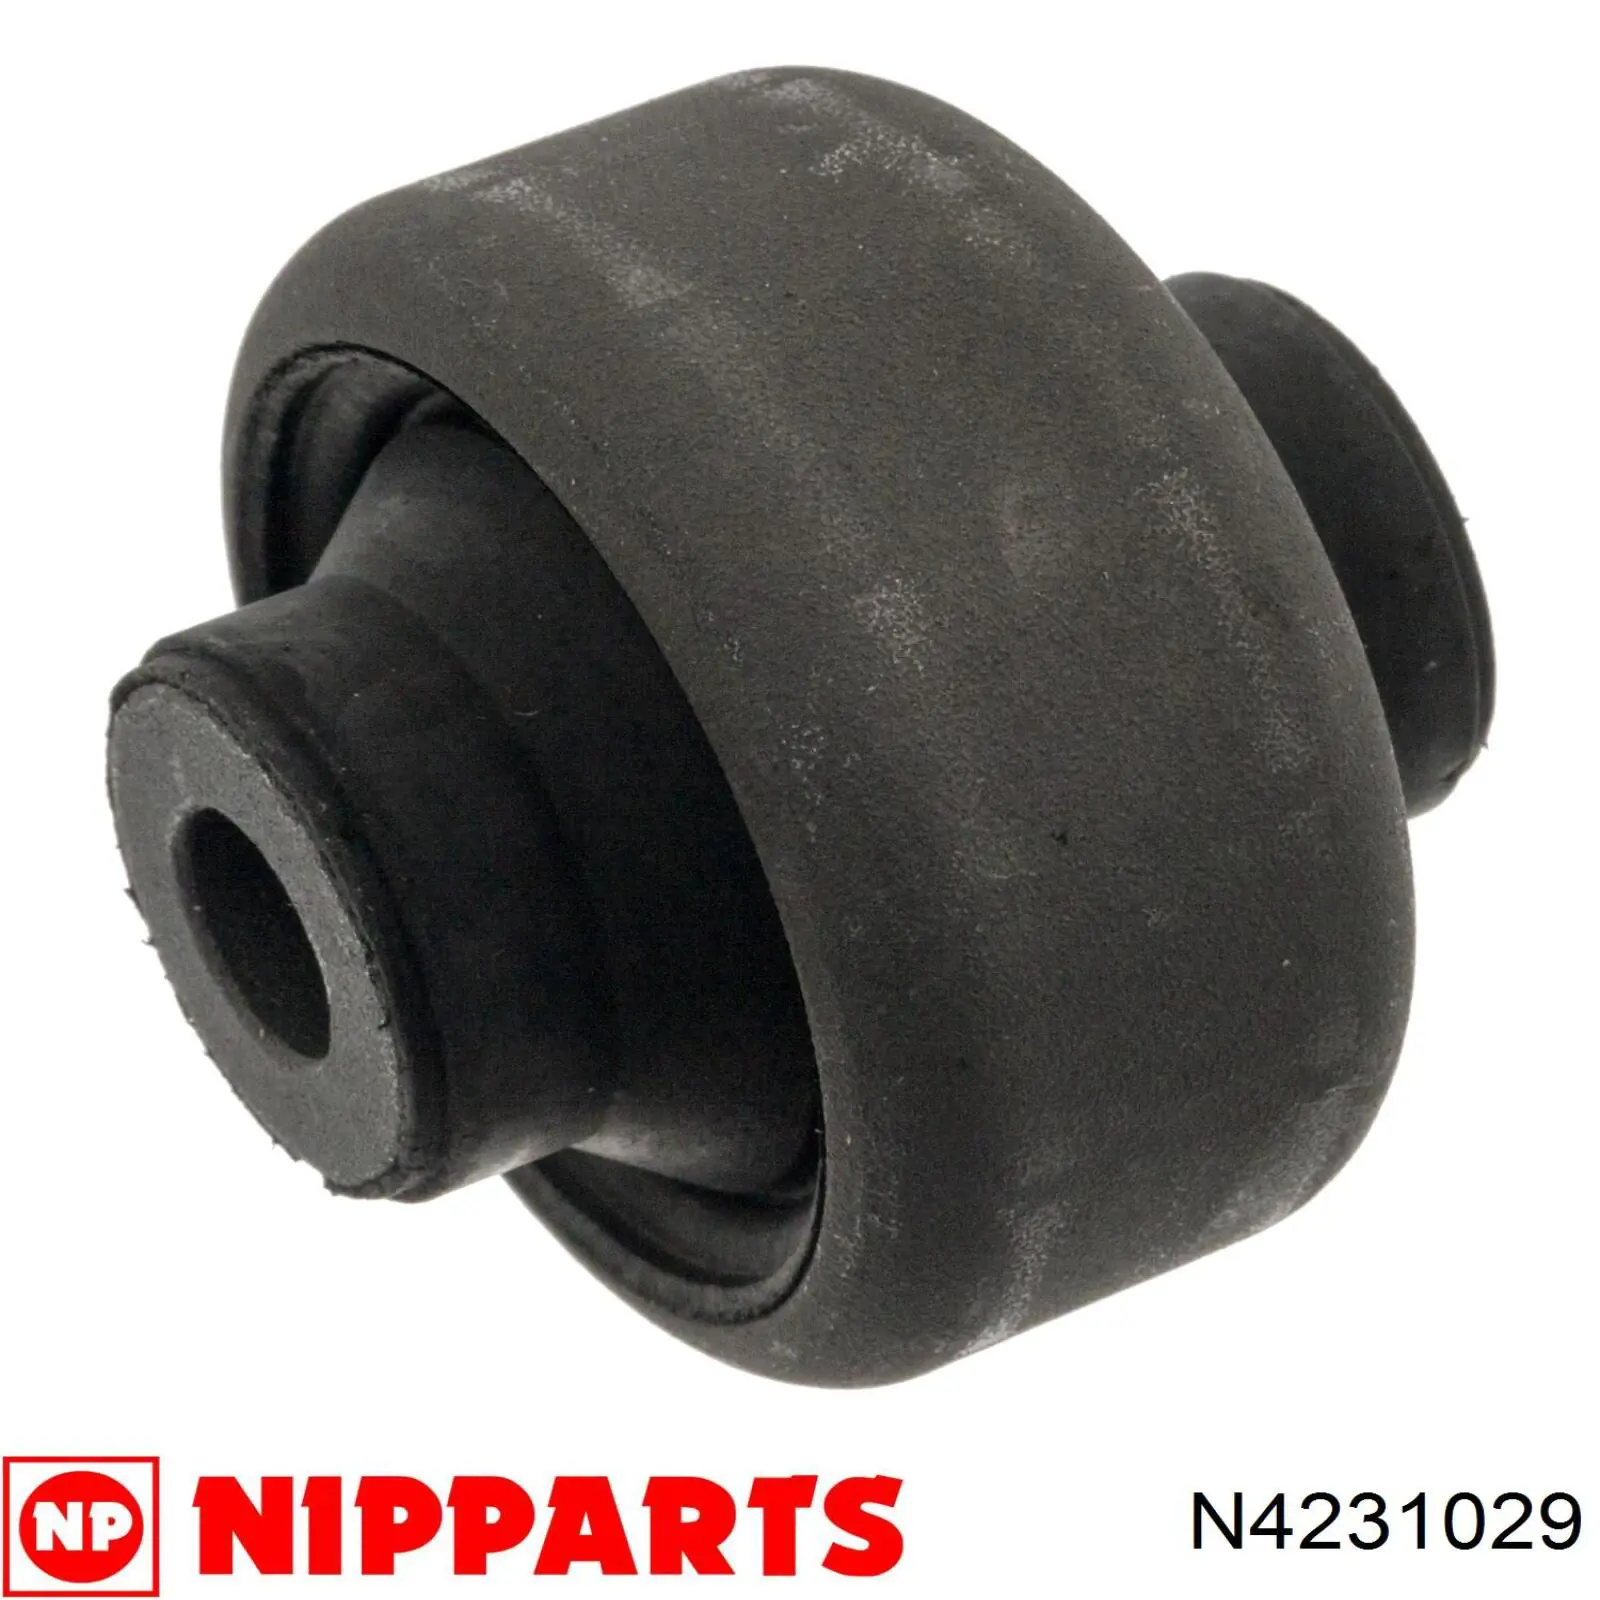 N4231029 Nipparts silentblock de suspensión delantero inferior